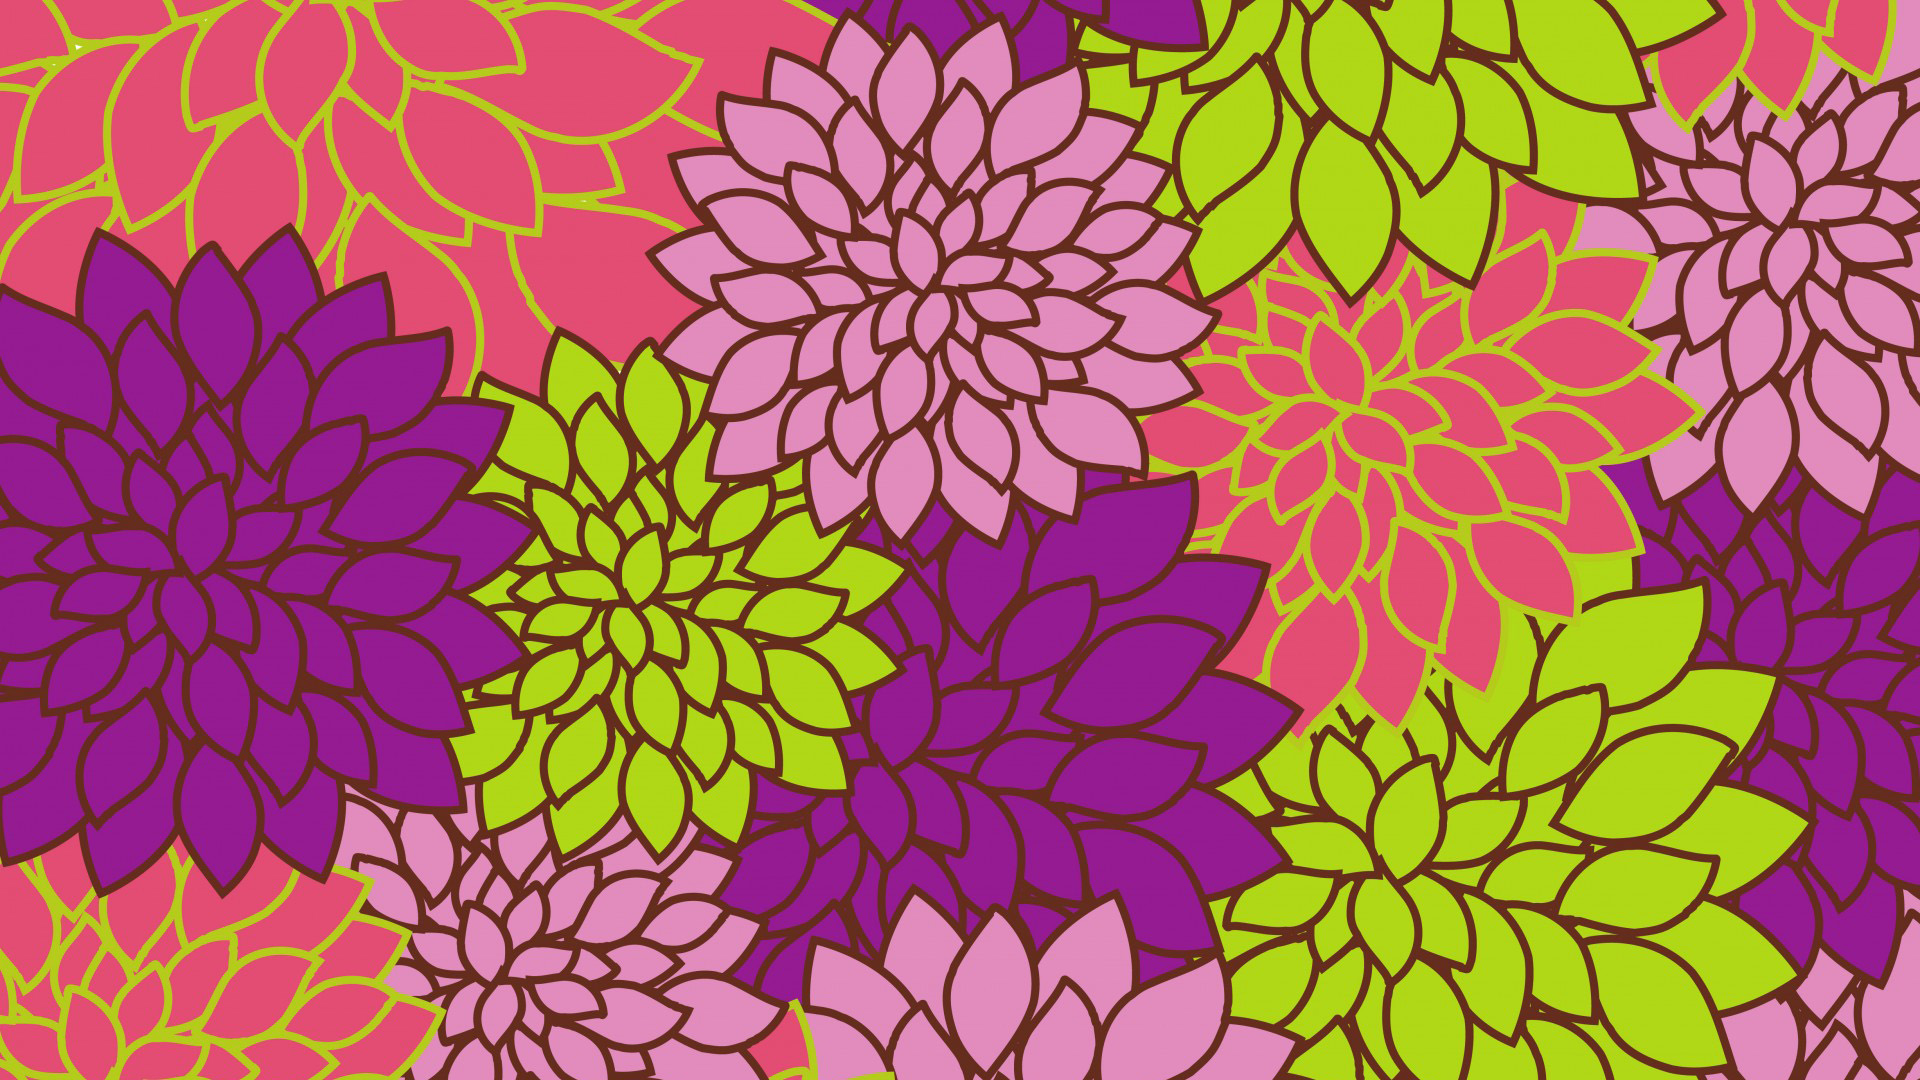 밝은 꽃 무늬 벽지,무늬,보라색,잎,꽃 무늬 디자인,분홍